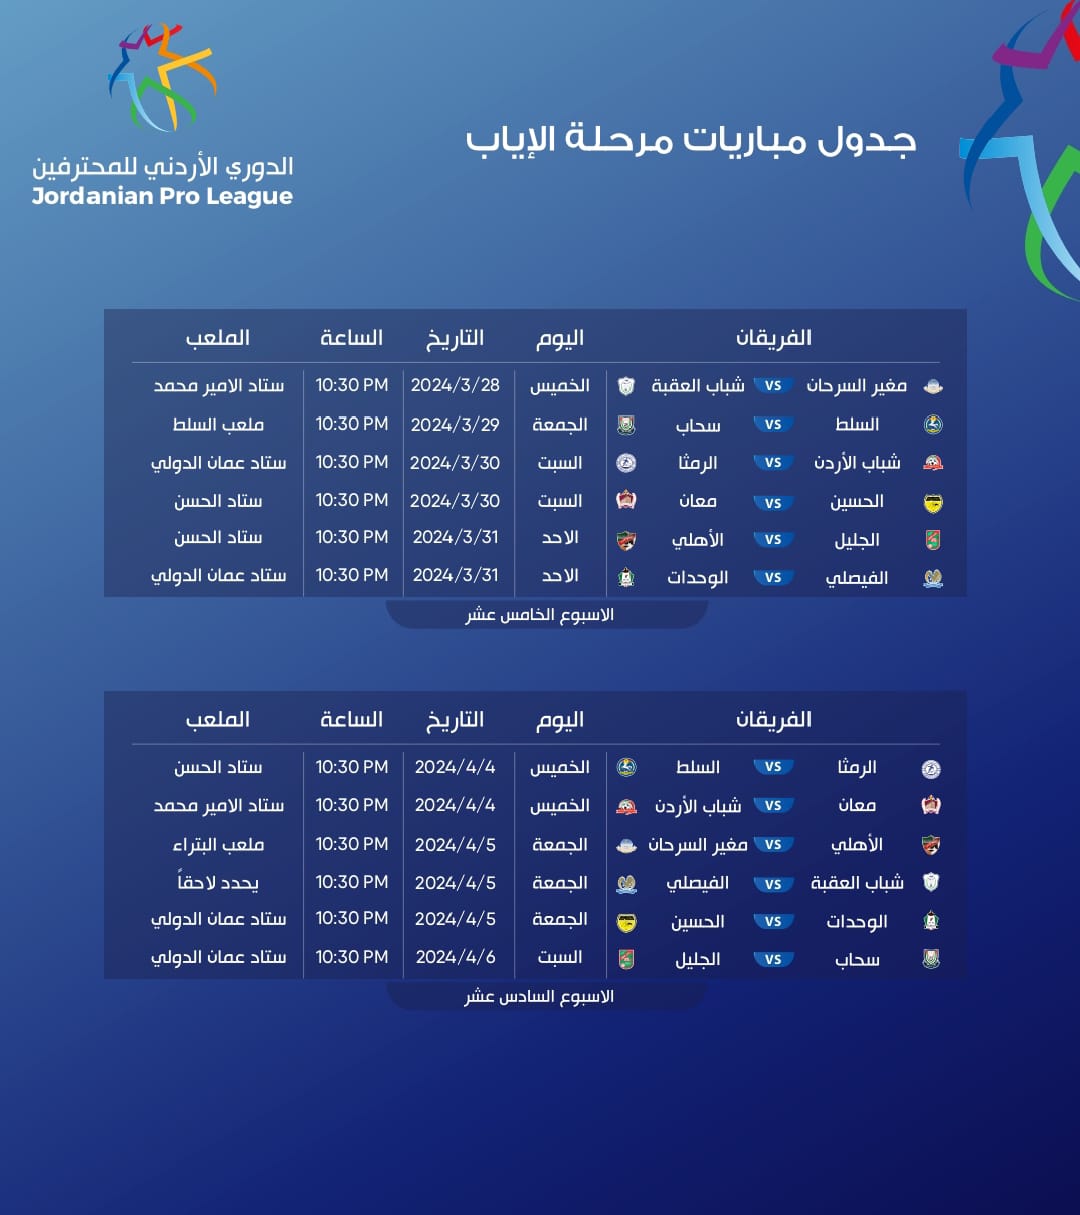 برنامج الجولتين الـ15 والـ16 في الدوري الأردني